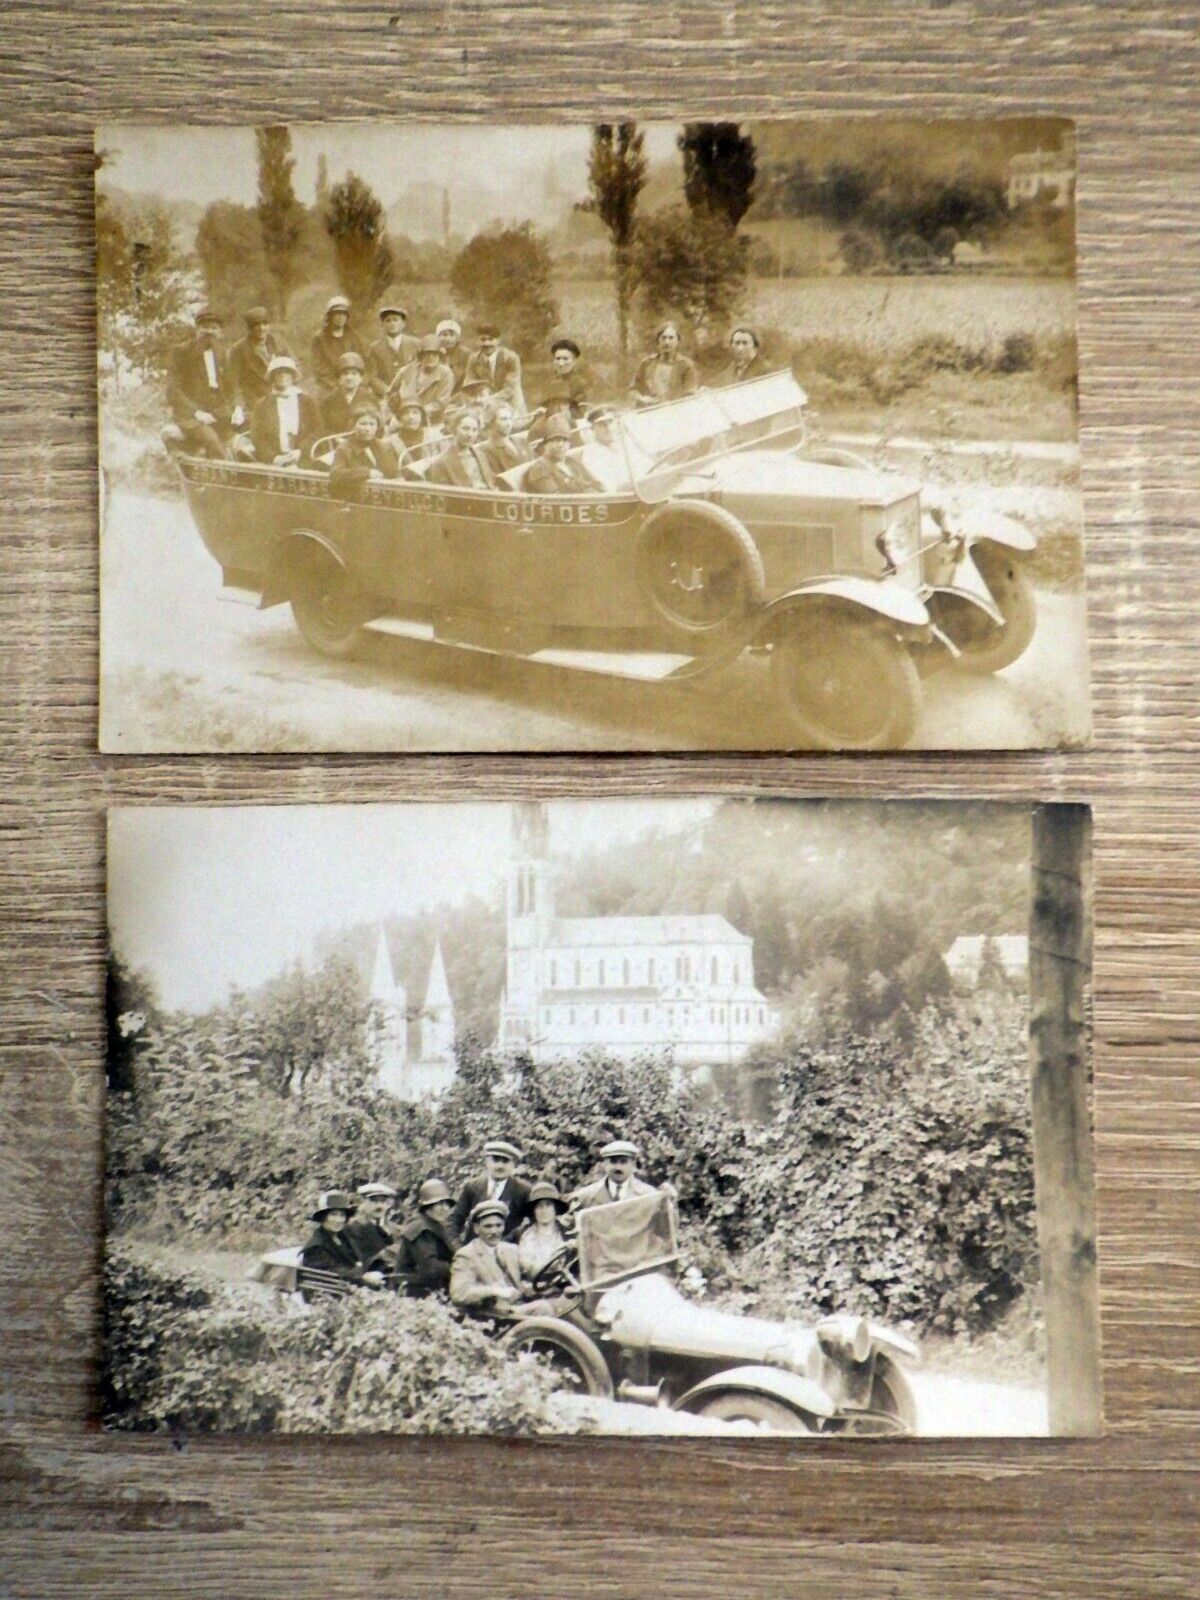 CPA / CPSM Postcards CIRCA 1925 Heavy Excursion COACH & AUTOMOBILE Photos